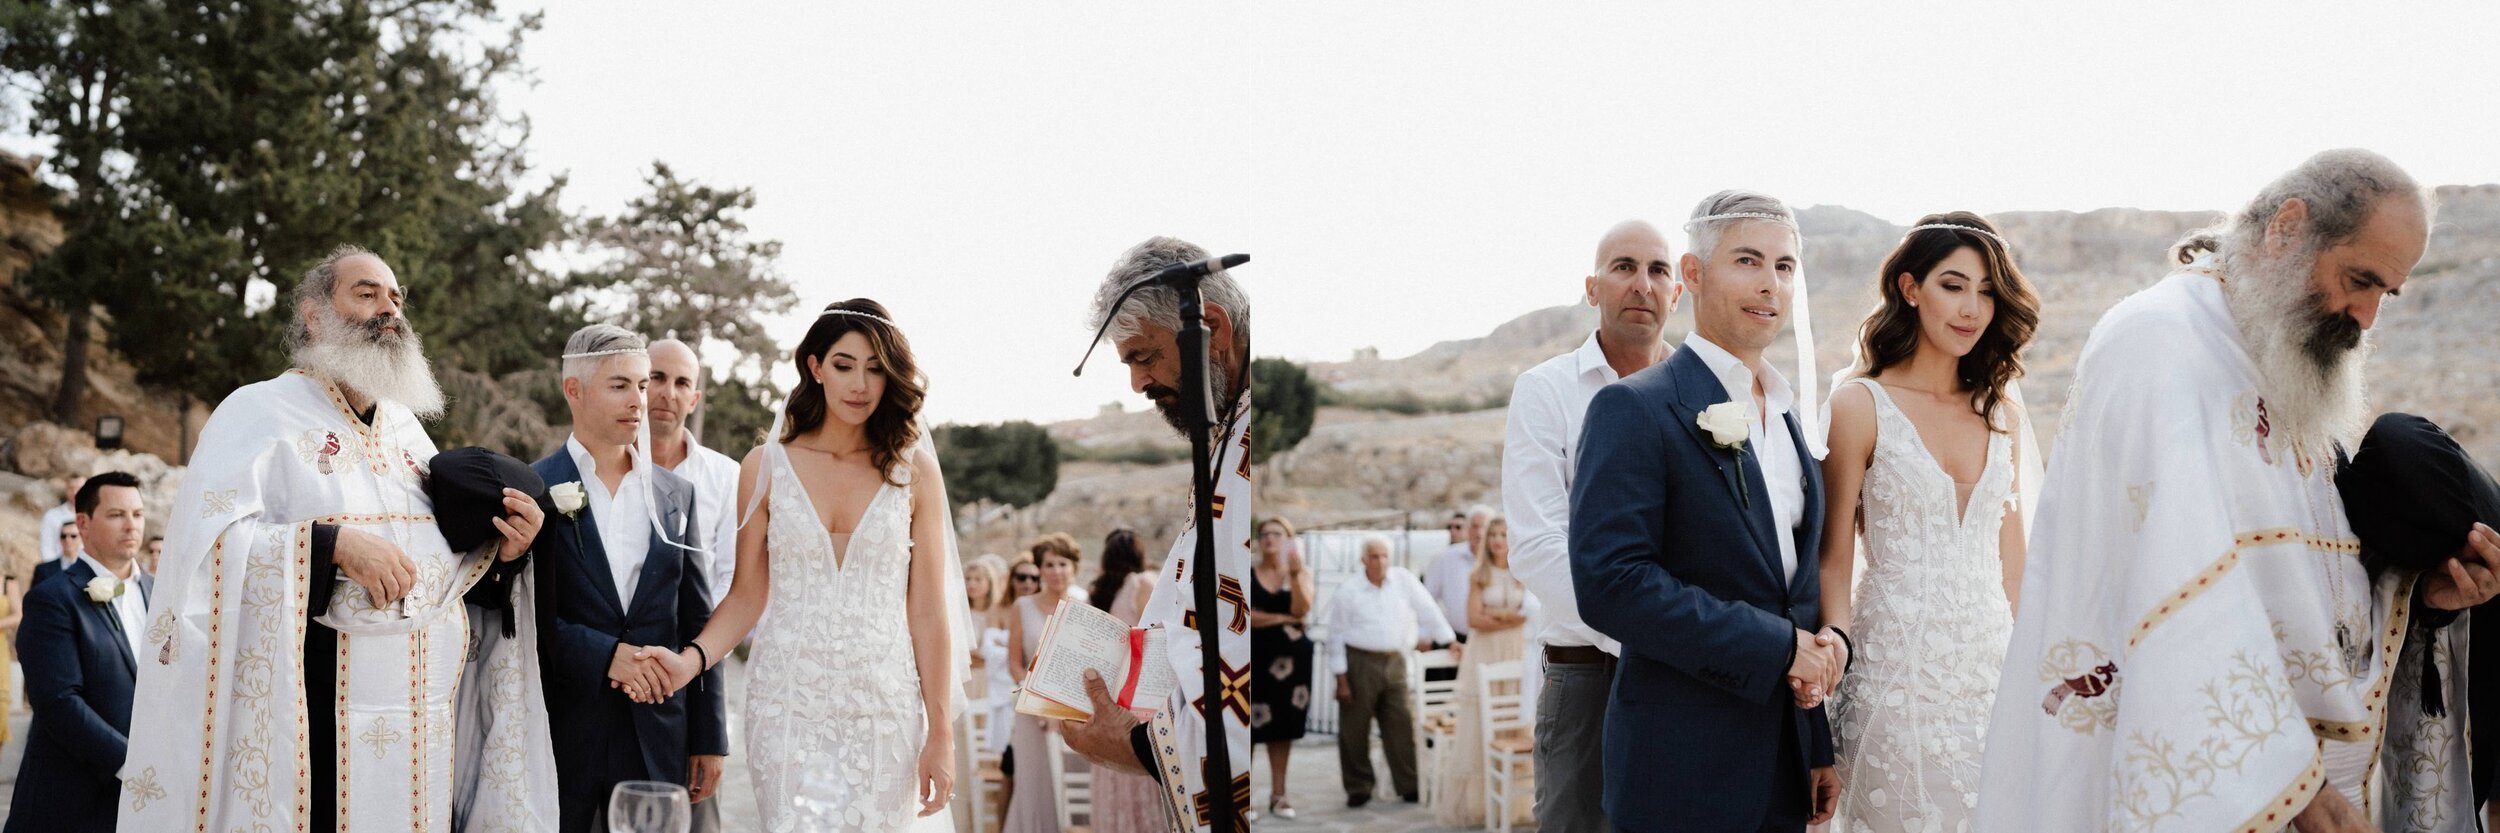 Greece+Santorini+Rhodes+wedding+photogtaphy+-+89.jpg